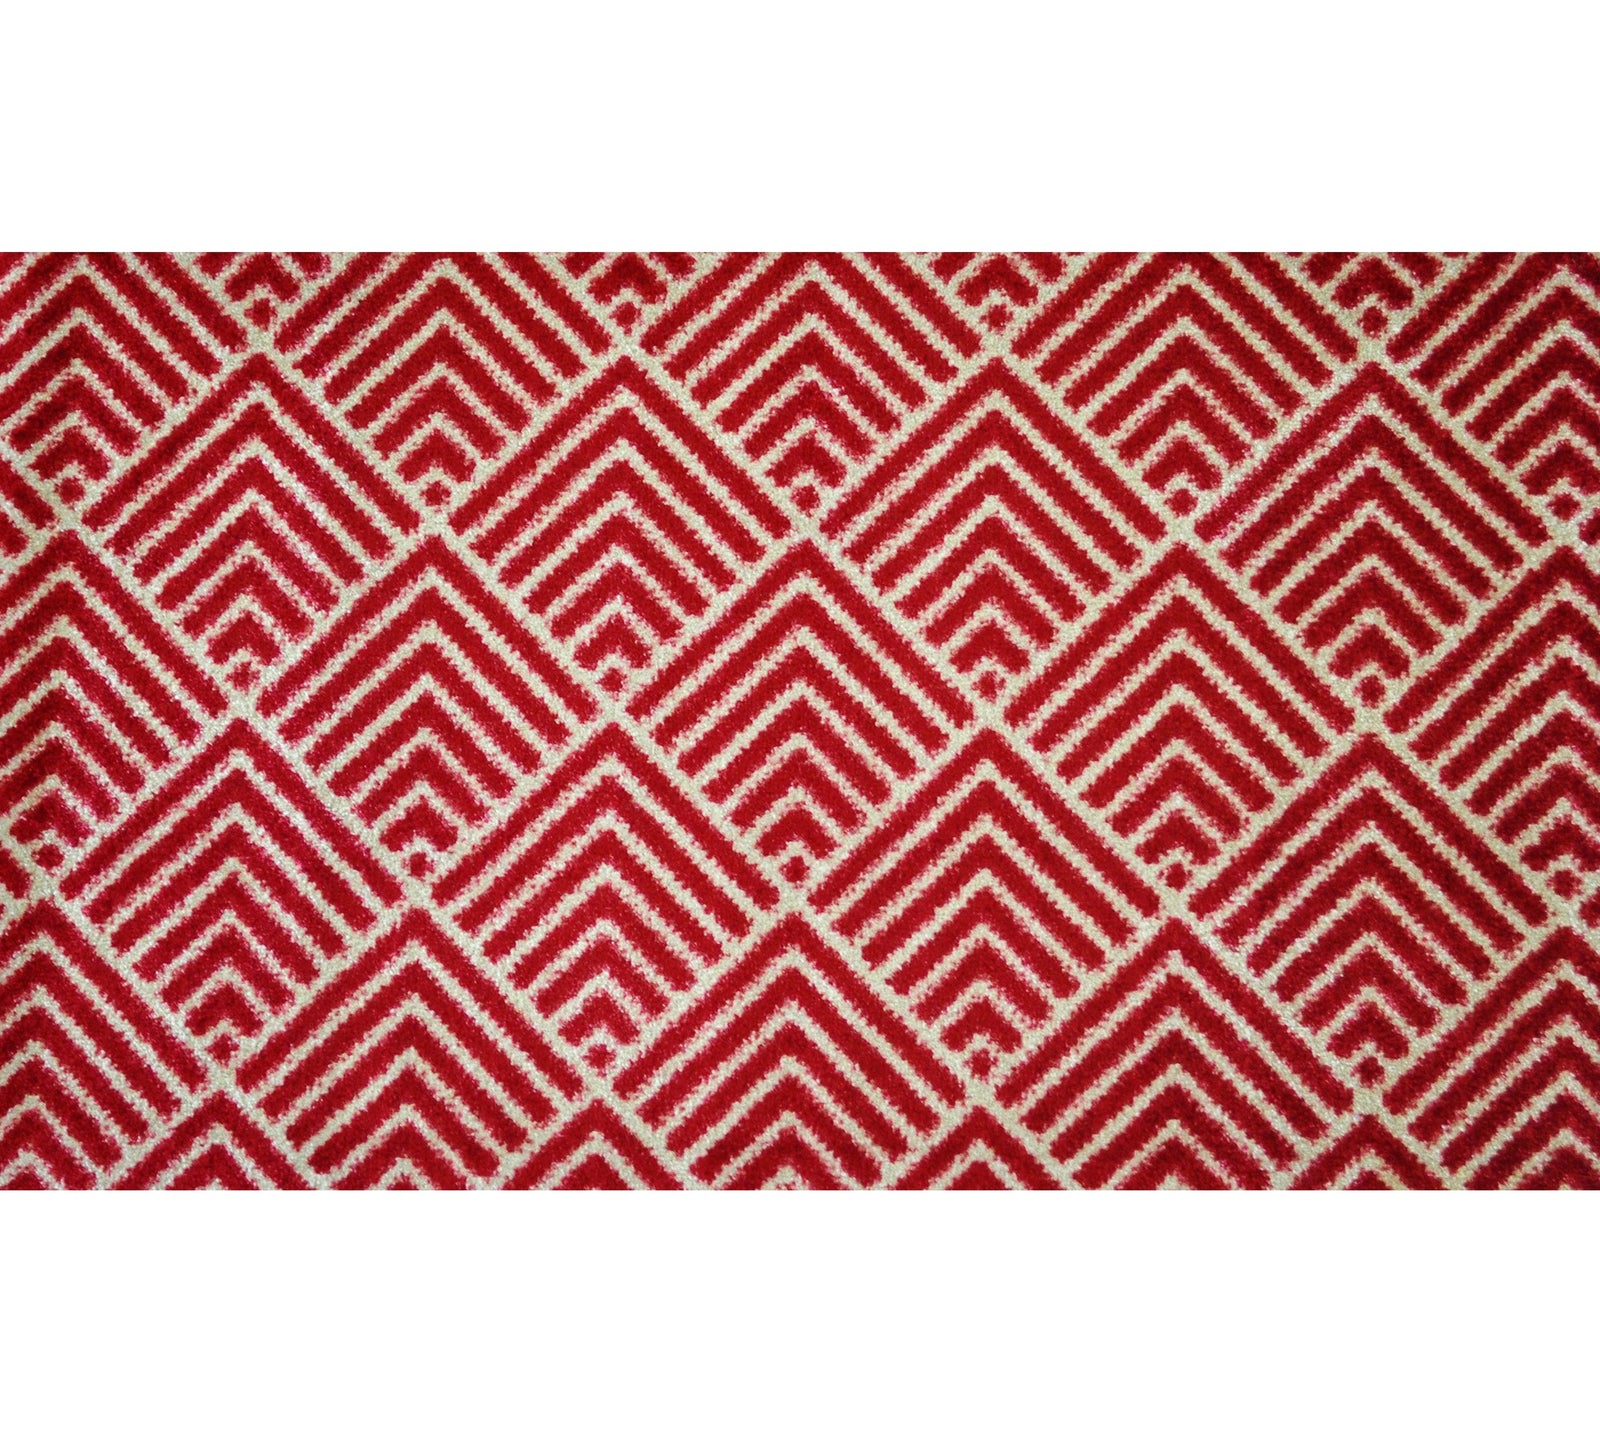 2' x 4' Deep Red and Tan Arrow Geo Washable Floor Mat